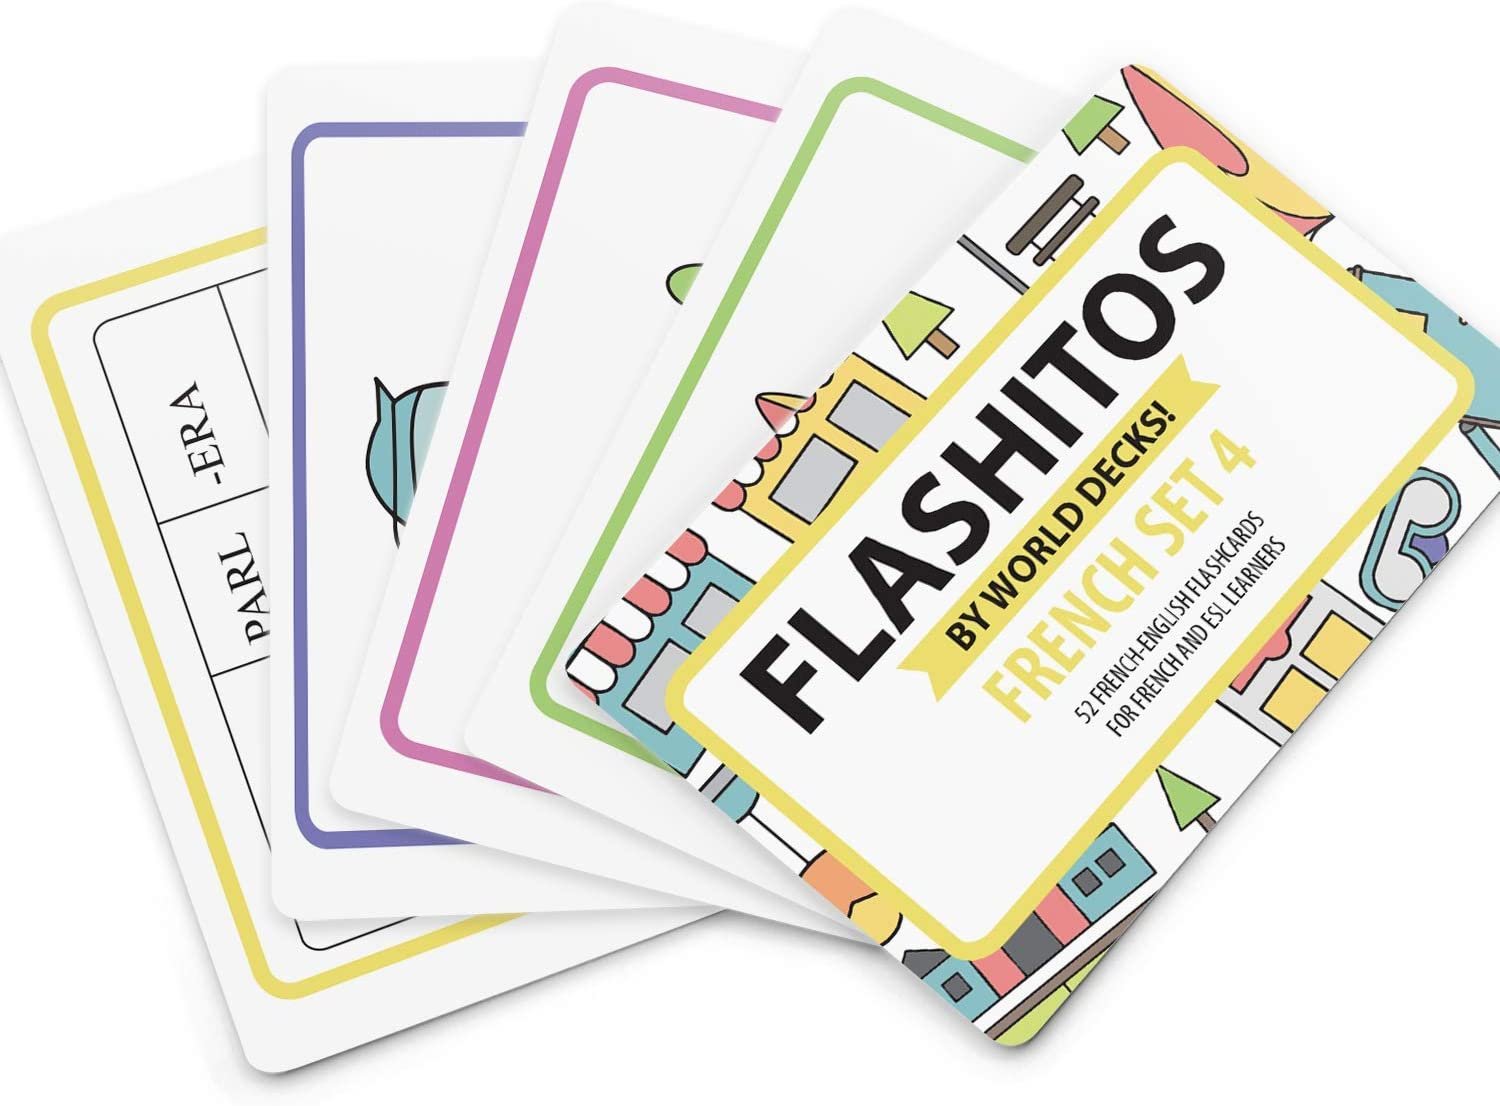 Etienne des Sherpas teste les flashcards FLASH 2.0 !